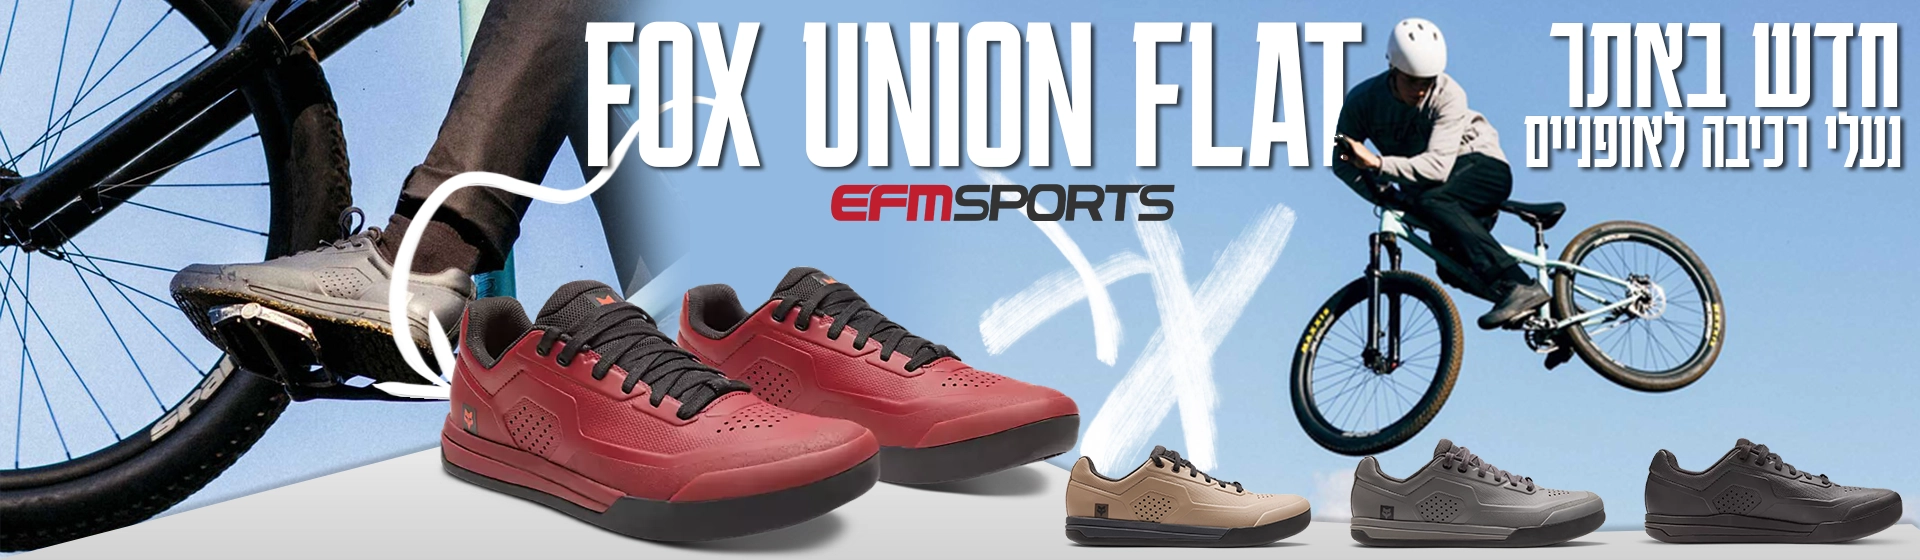 חדש באתר - נעליי רכיבה לאופניים FOX UNION.